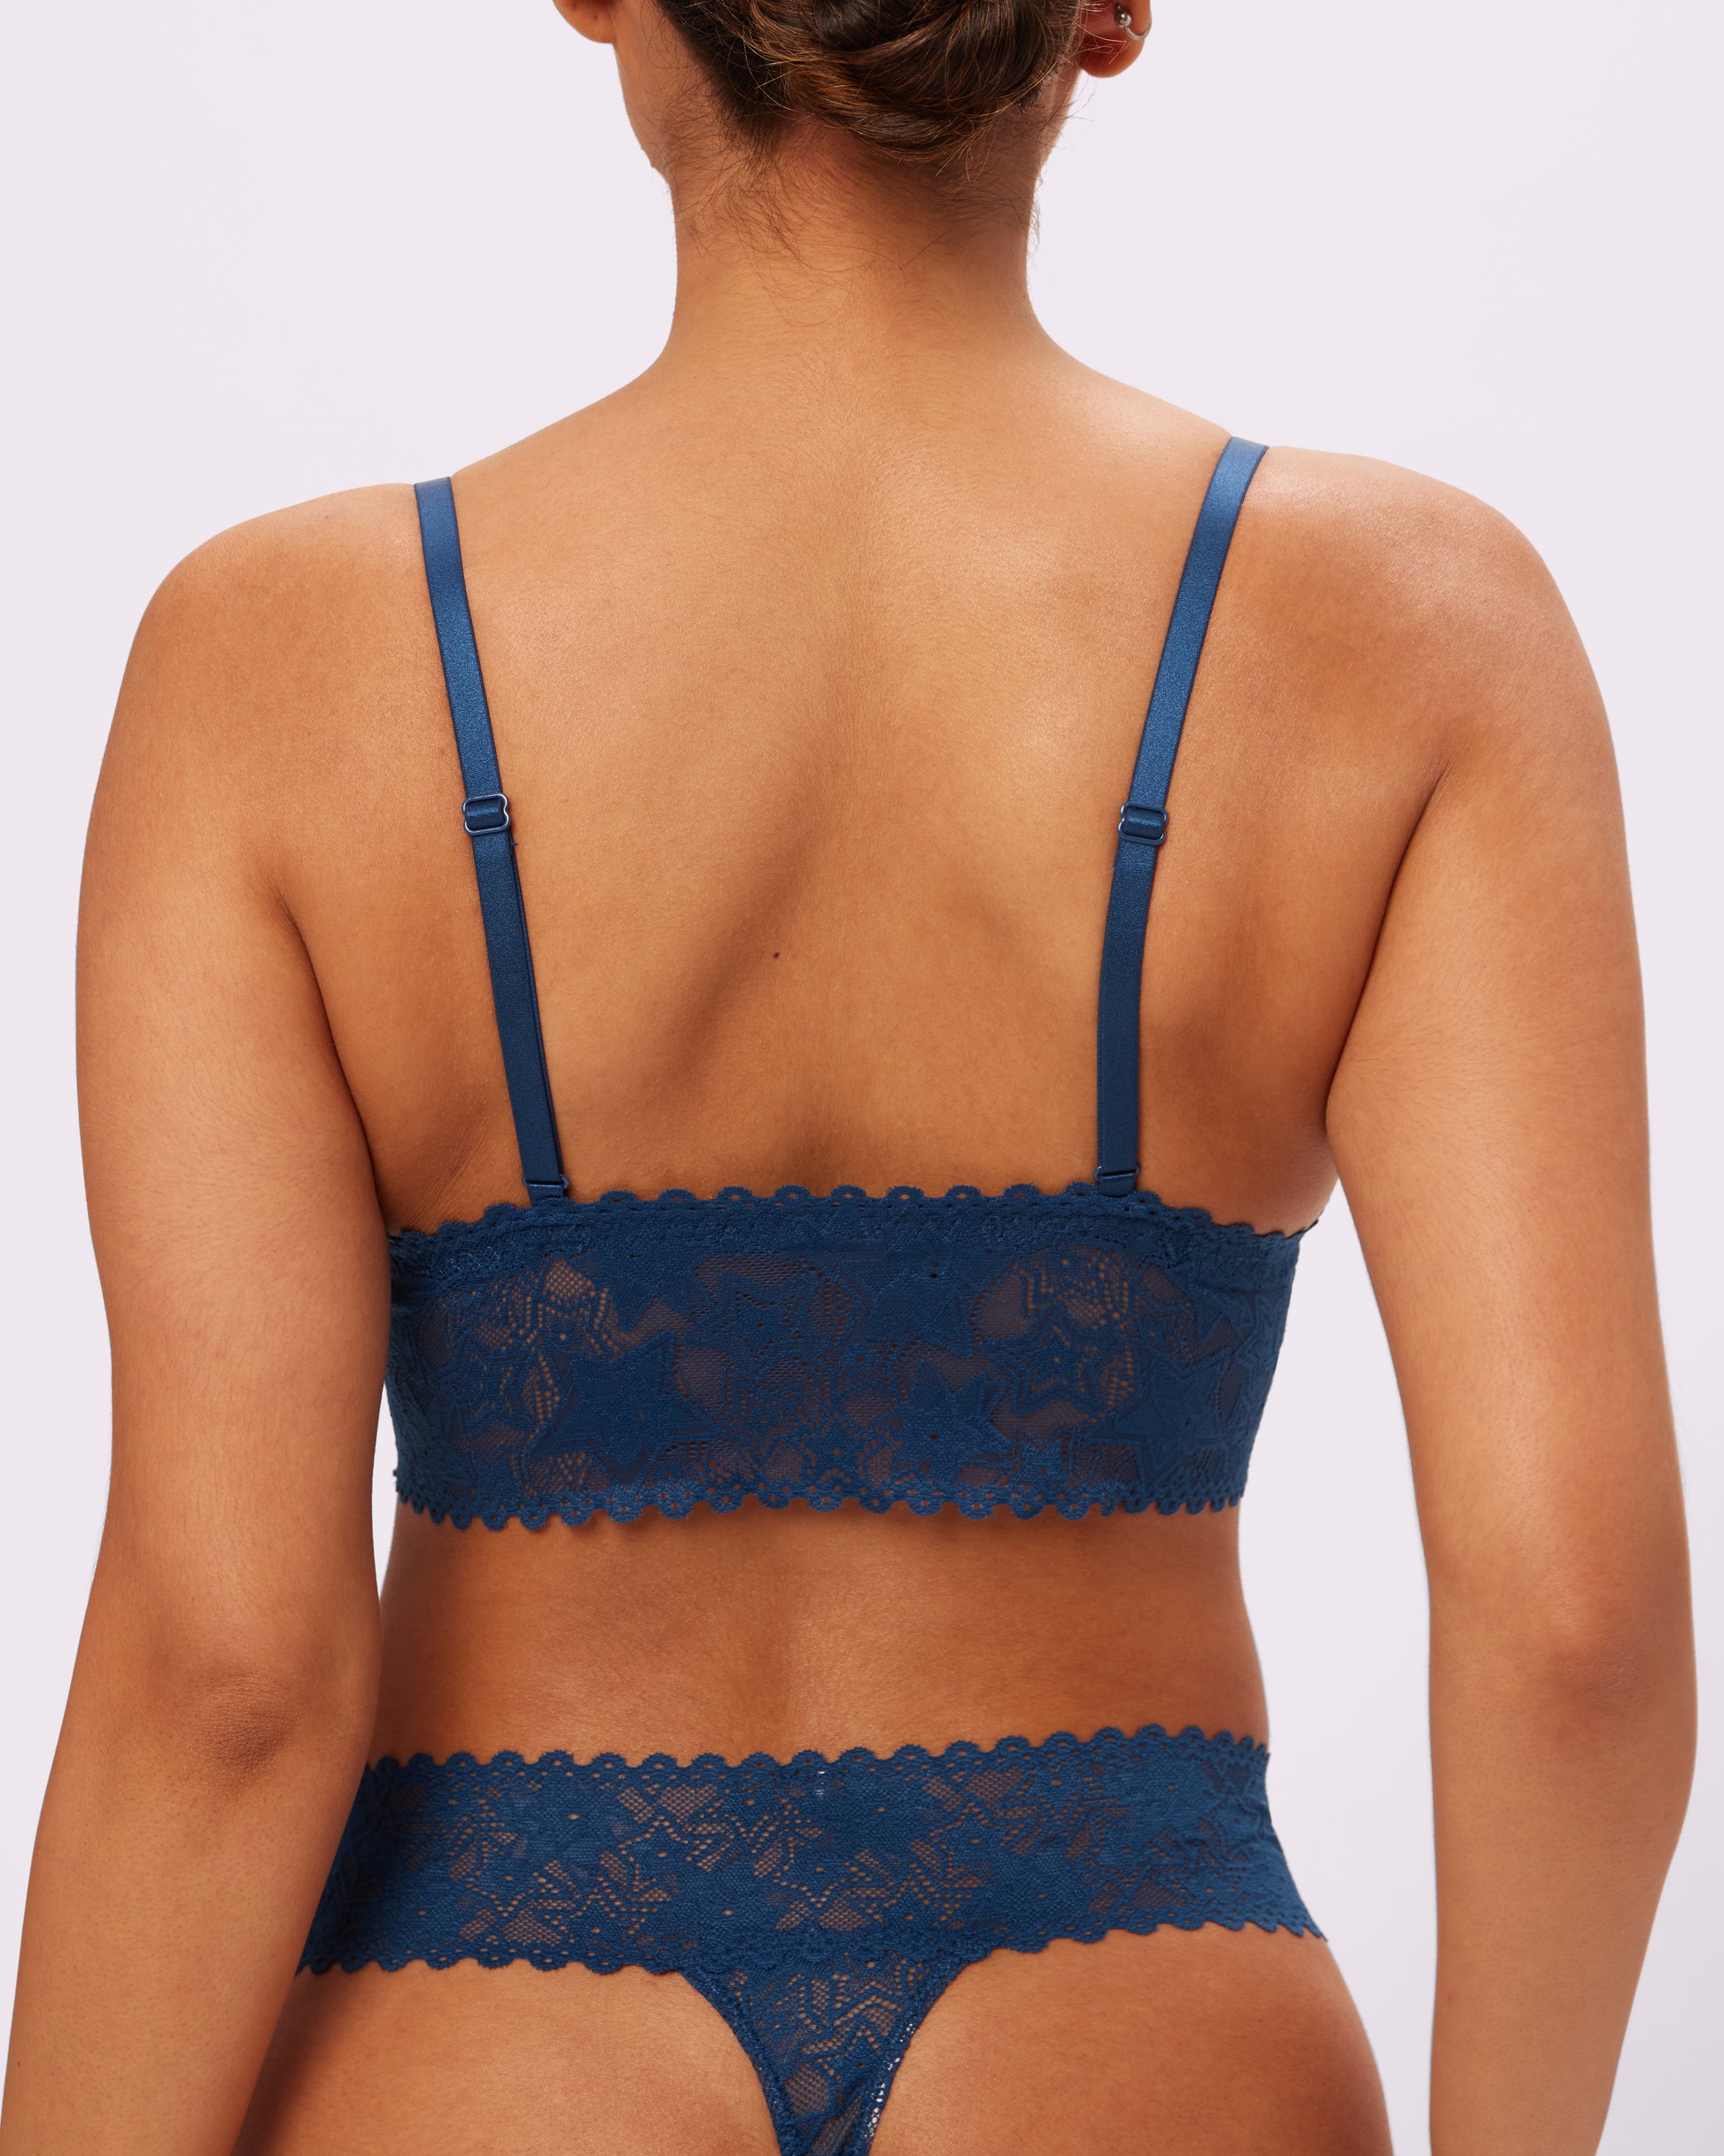 Lace Bralette Briefs Soft Triangle Bra Panty Sets